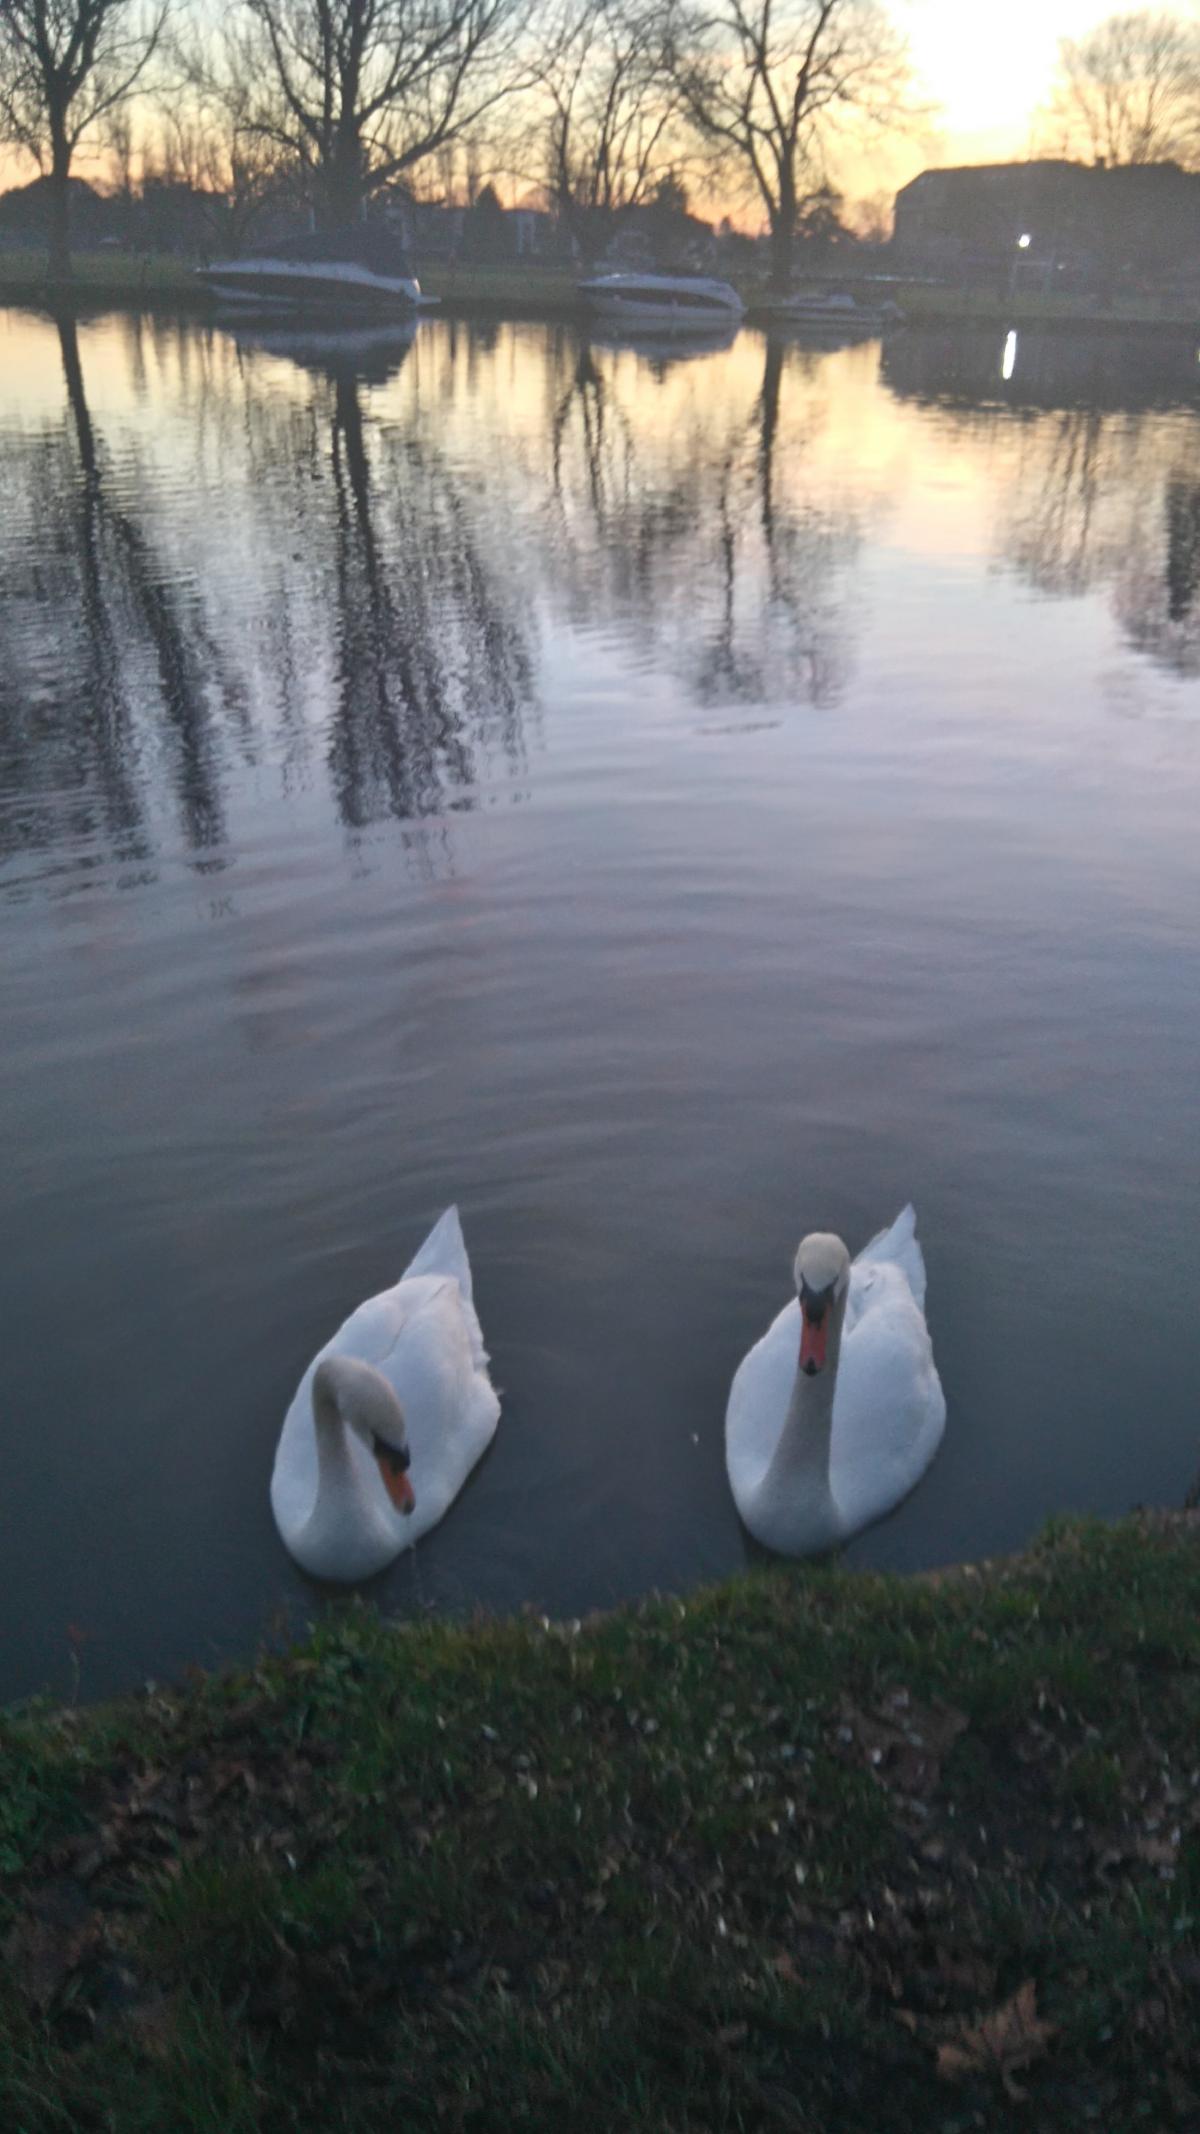 Tina Regan sent in this photo of a pair of swans as she took an evening dog walk towards Teddington.